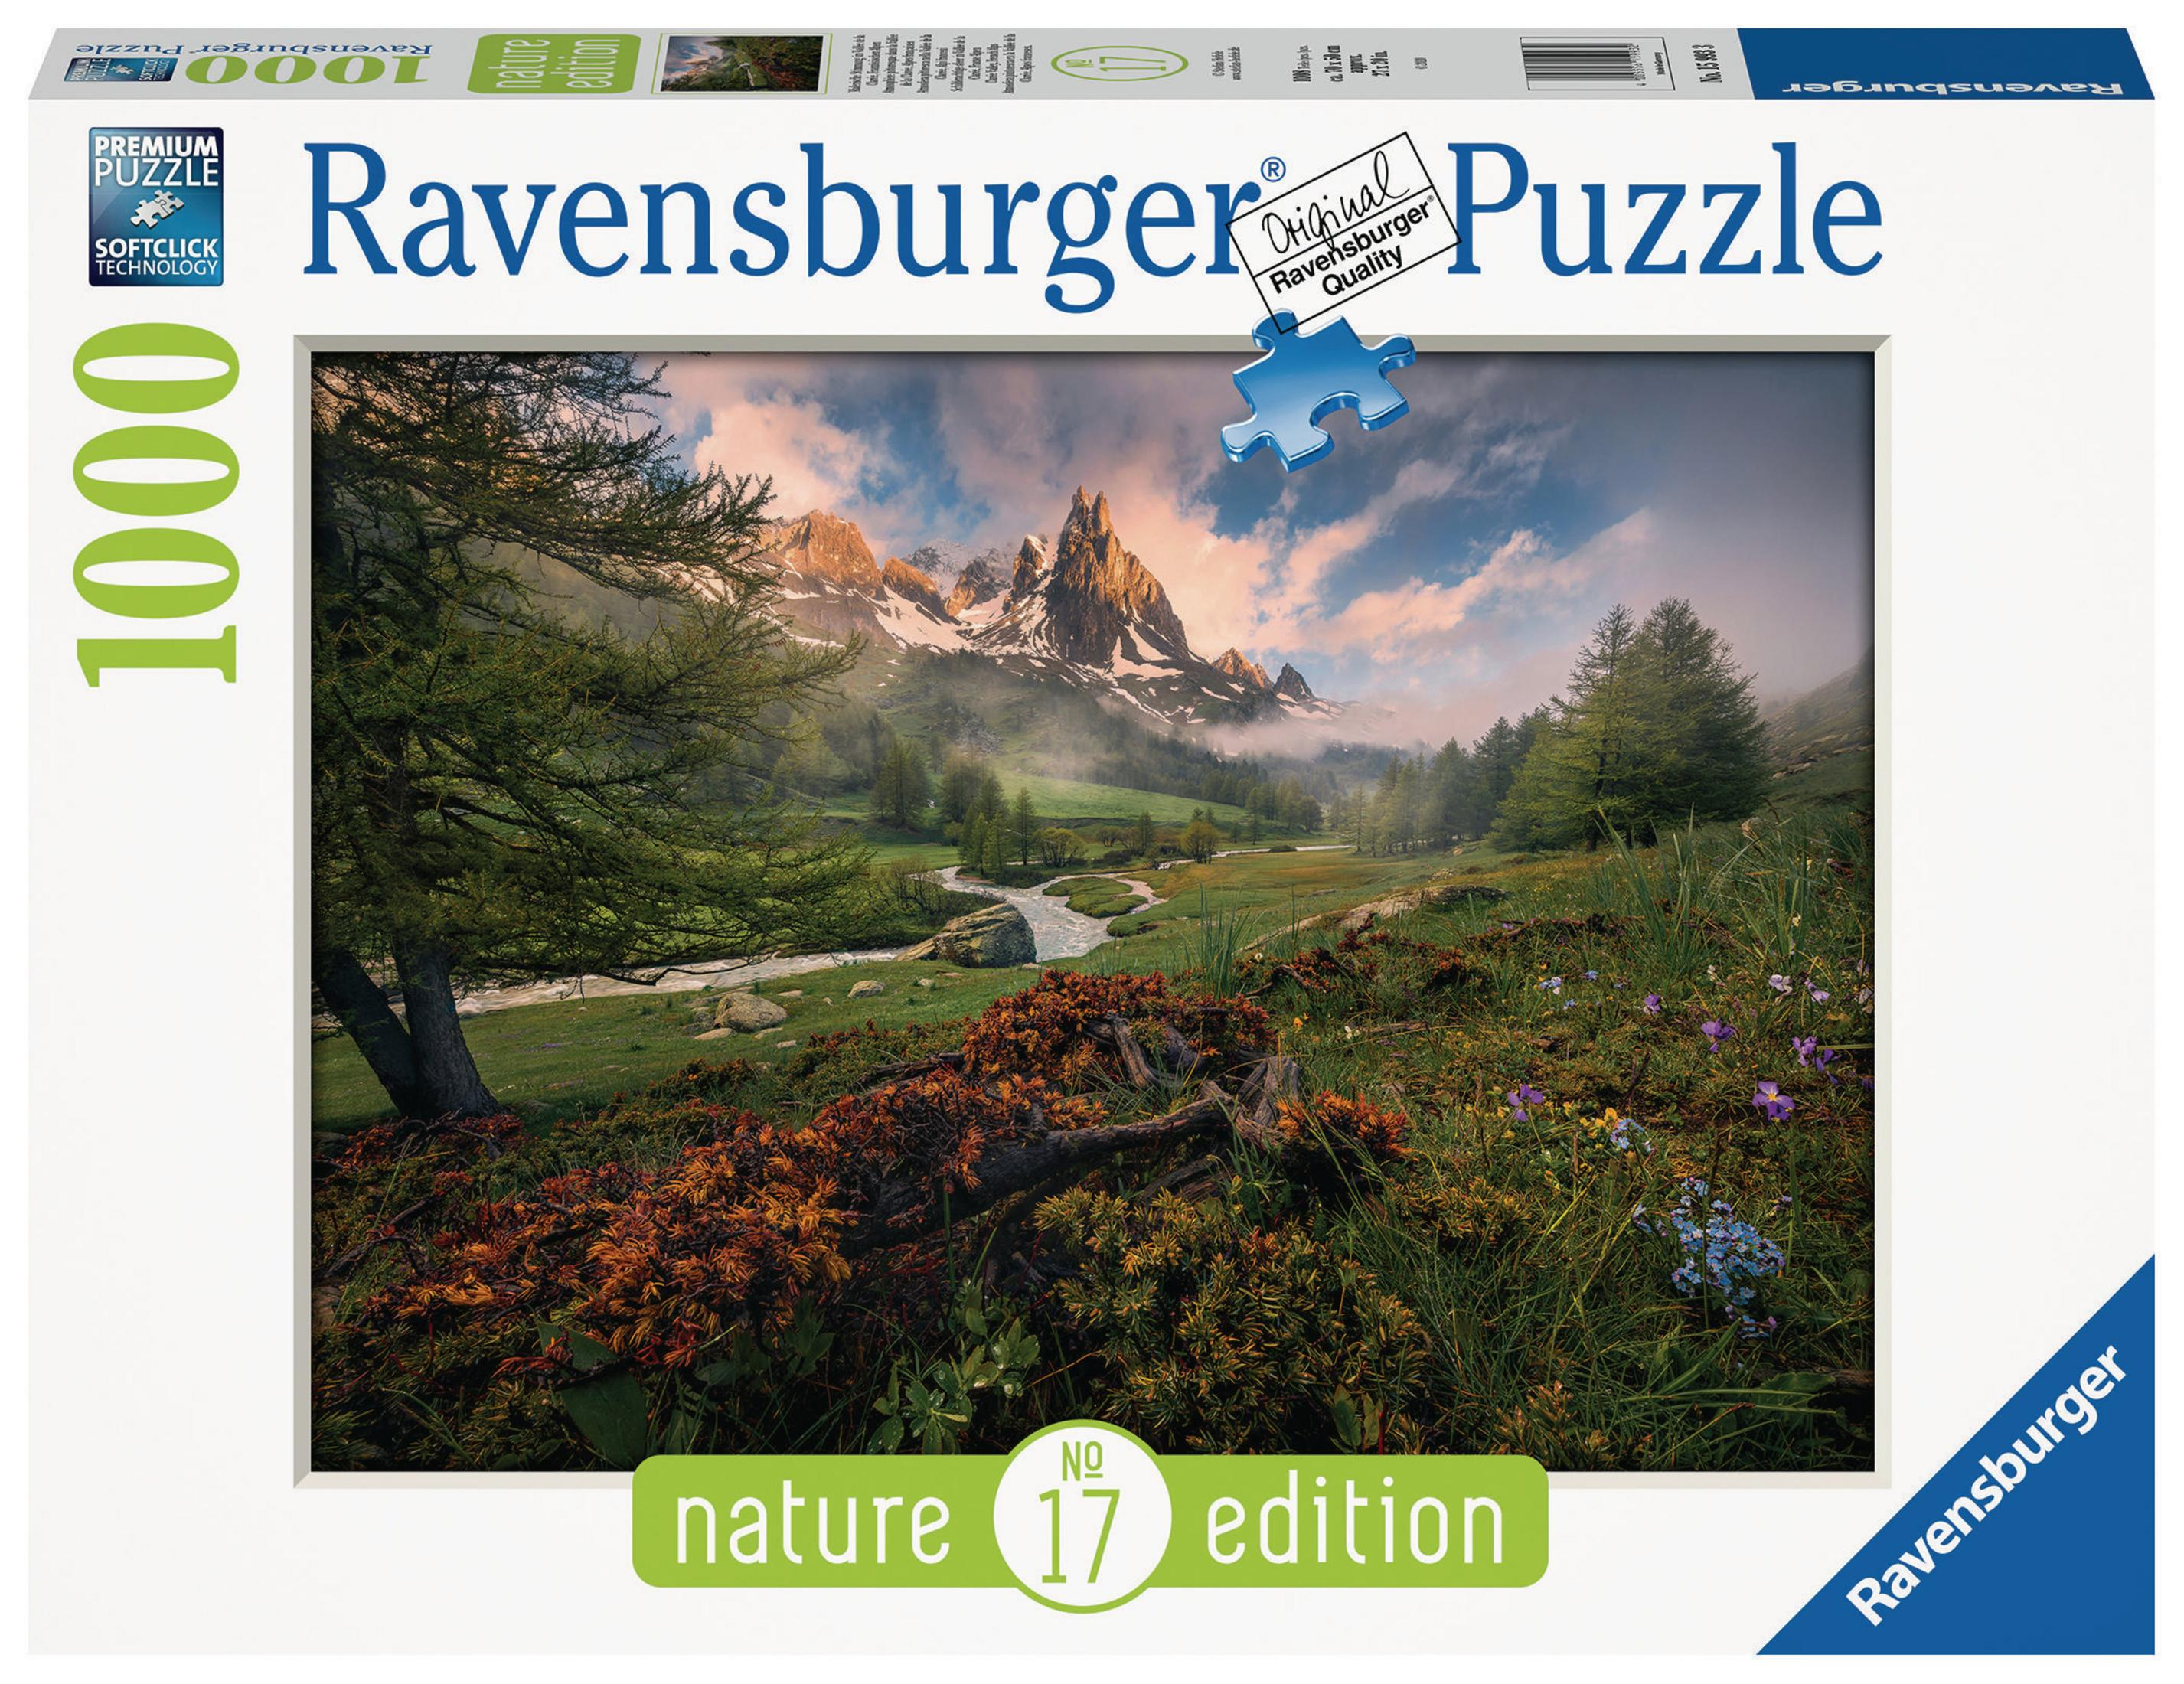 IM MALERISCHE VALLE RAVENSBURGER STIMMUNG 15993 Puzzle